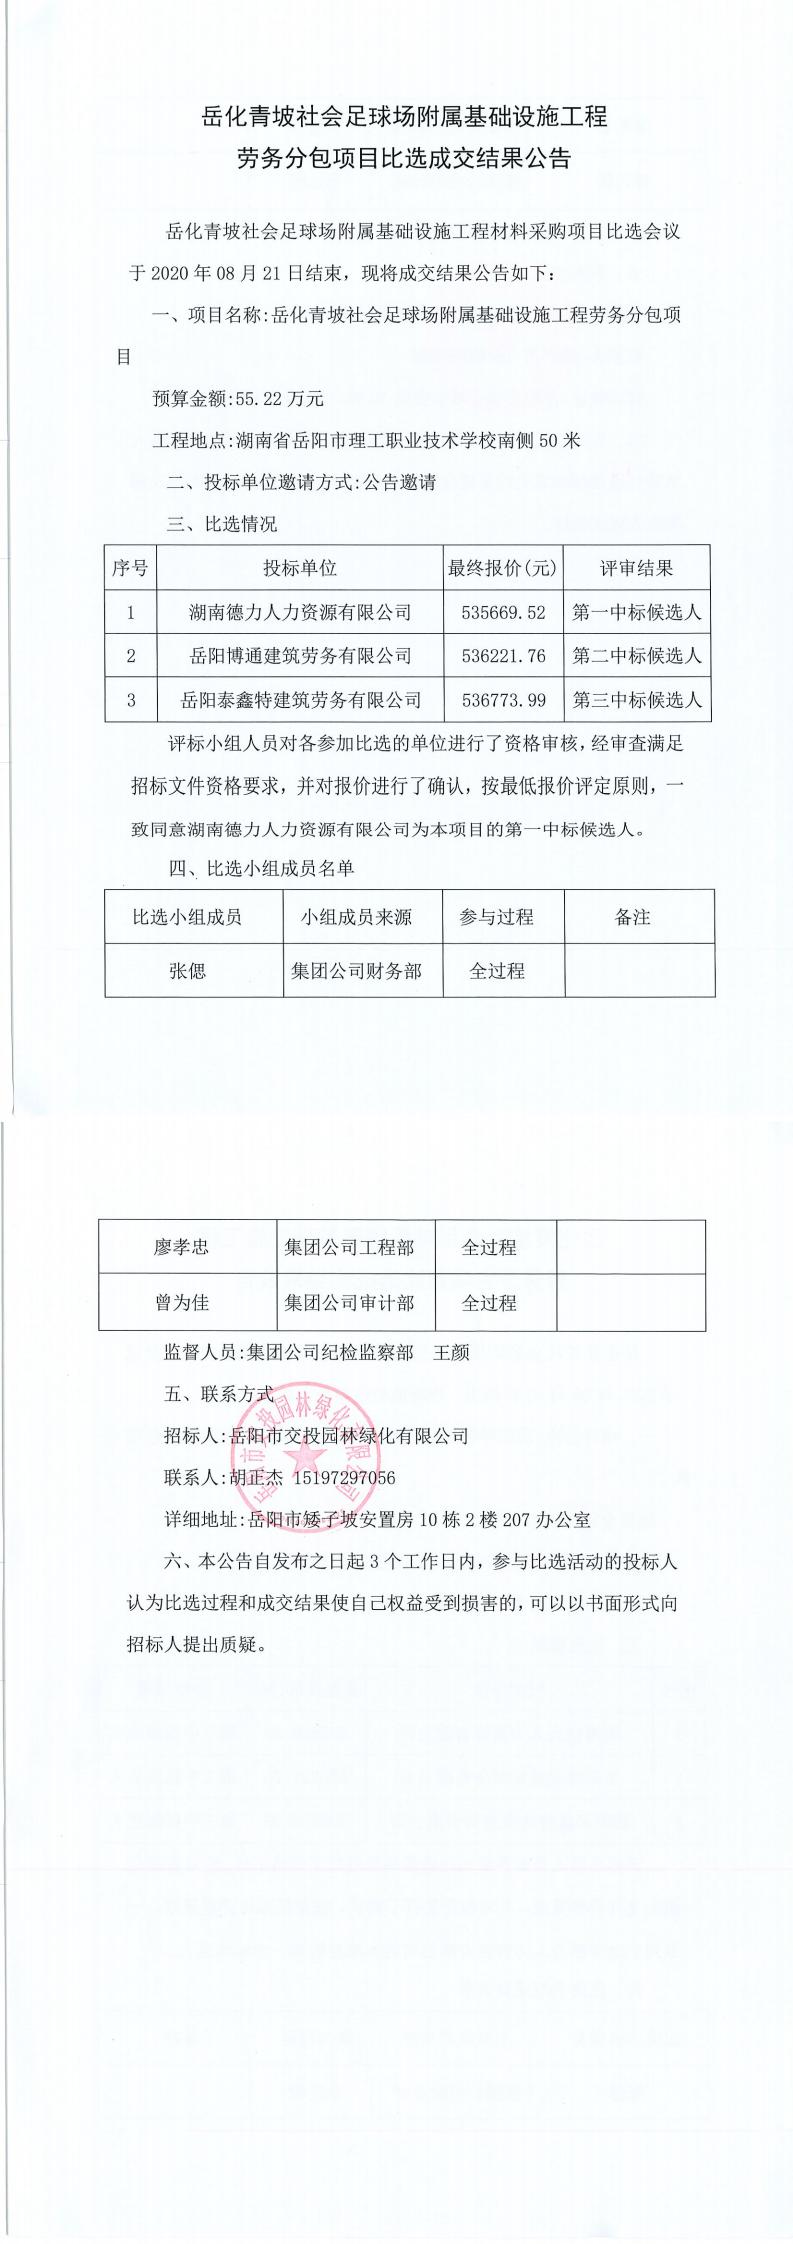 岳化青坡社会足球场附属基础设施工程劳务分包项目比选成交结果公告.jpg